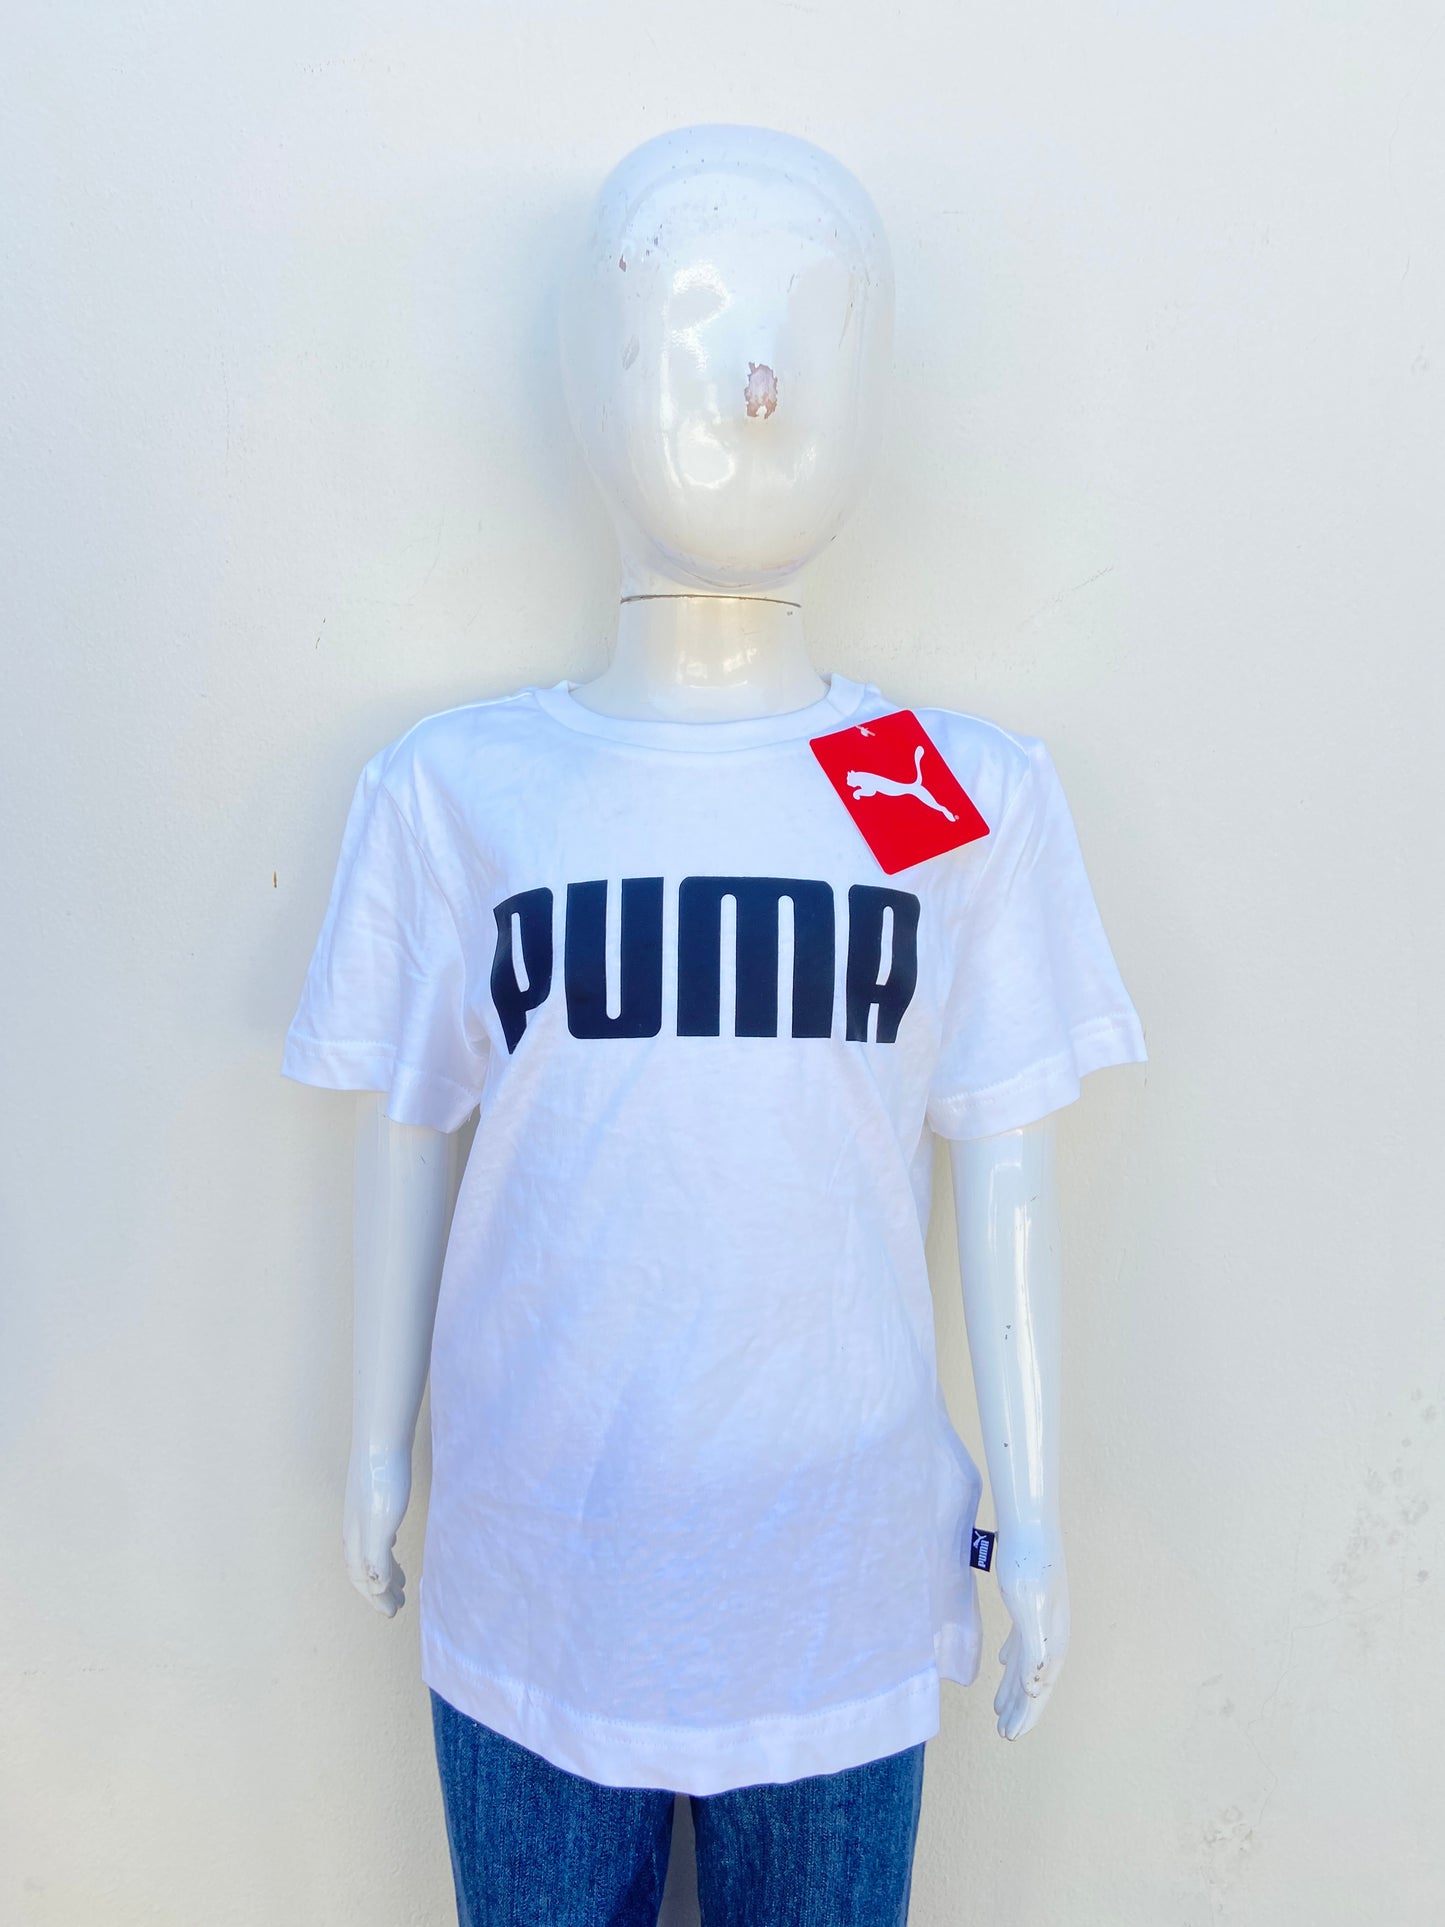 T-shirt Puma original blanco con letras PUMA en negro.